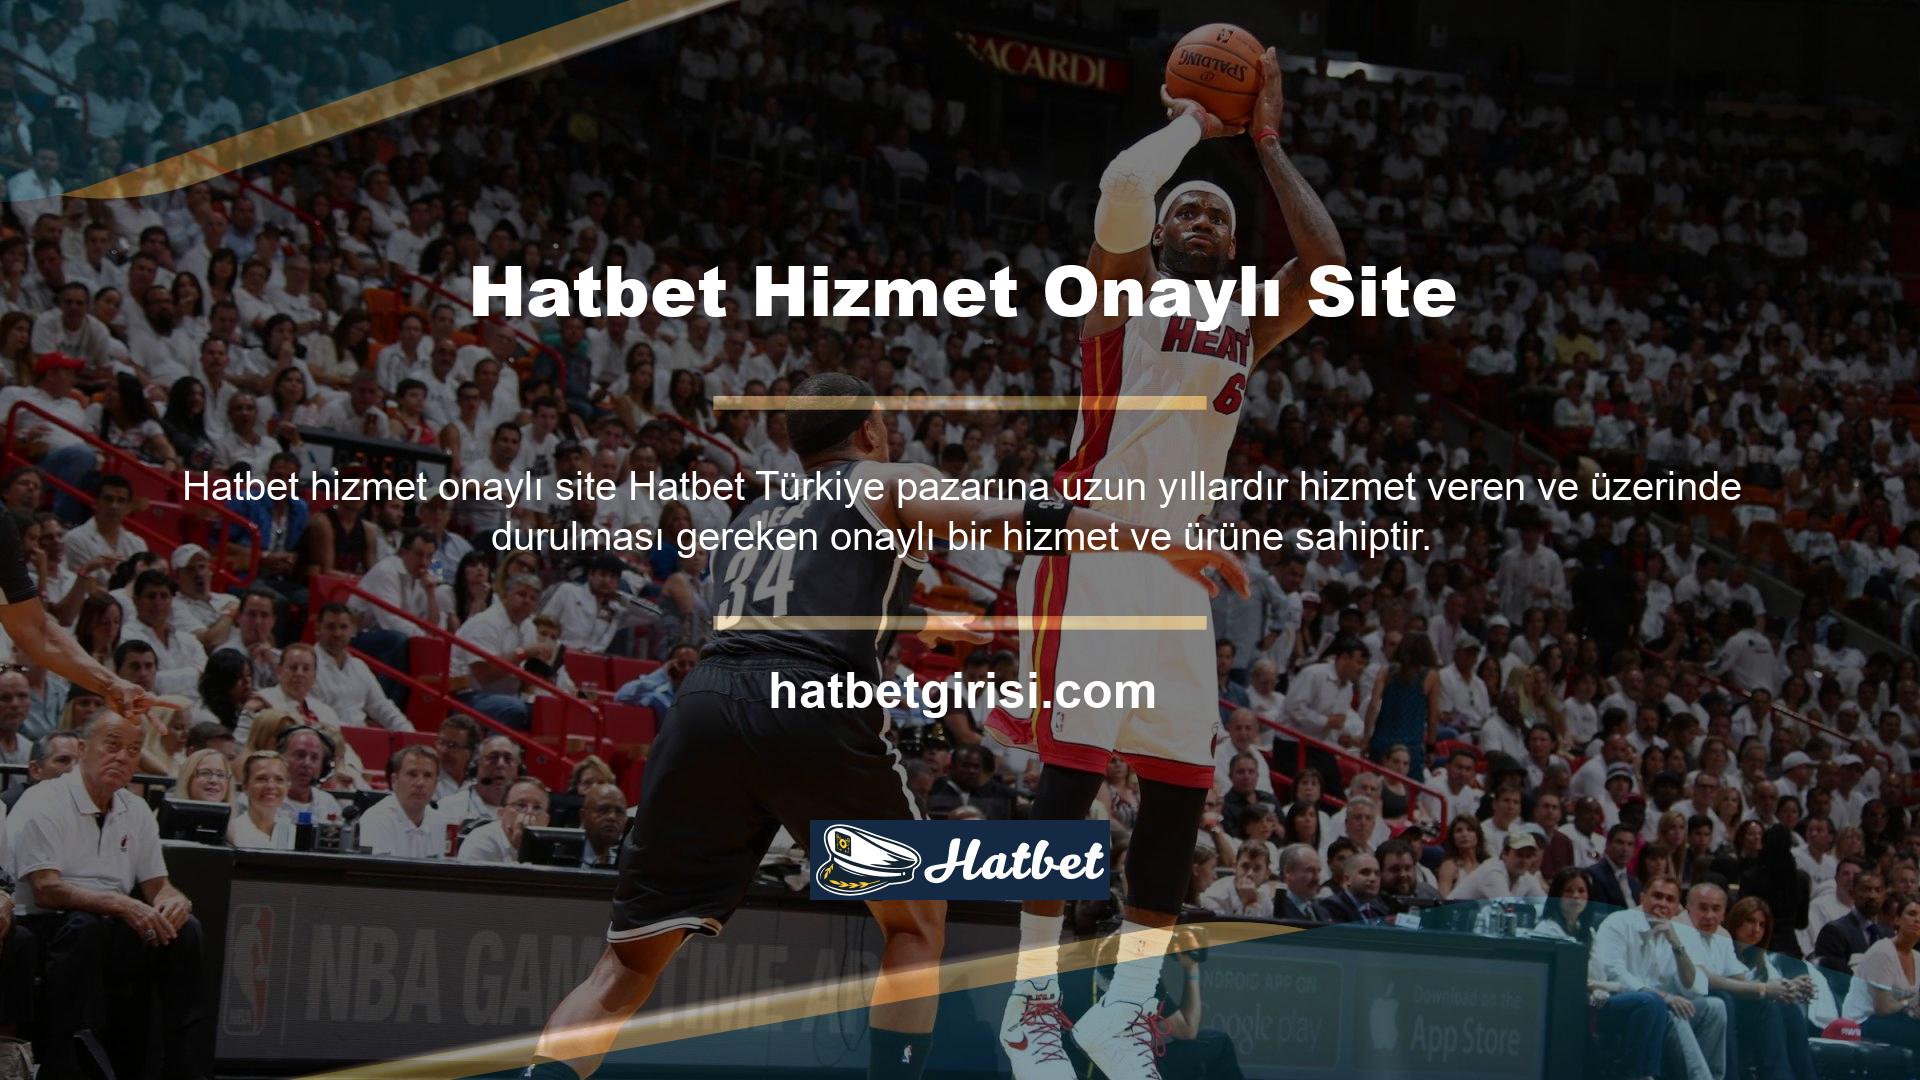 7/24 çevrimiçi olmasına rağmen hizmetlerini Türkiye pazarında sergilemeyi başarmıştır